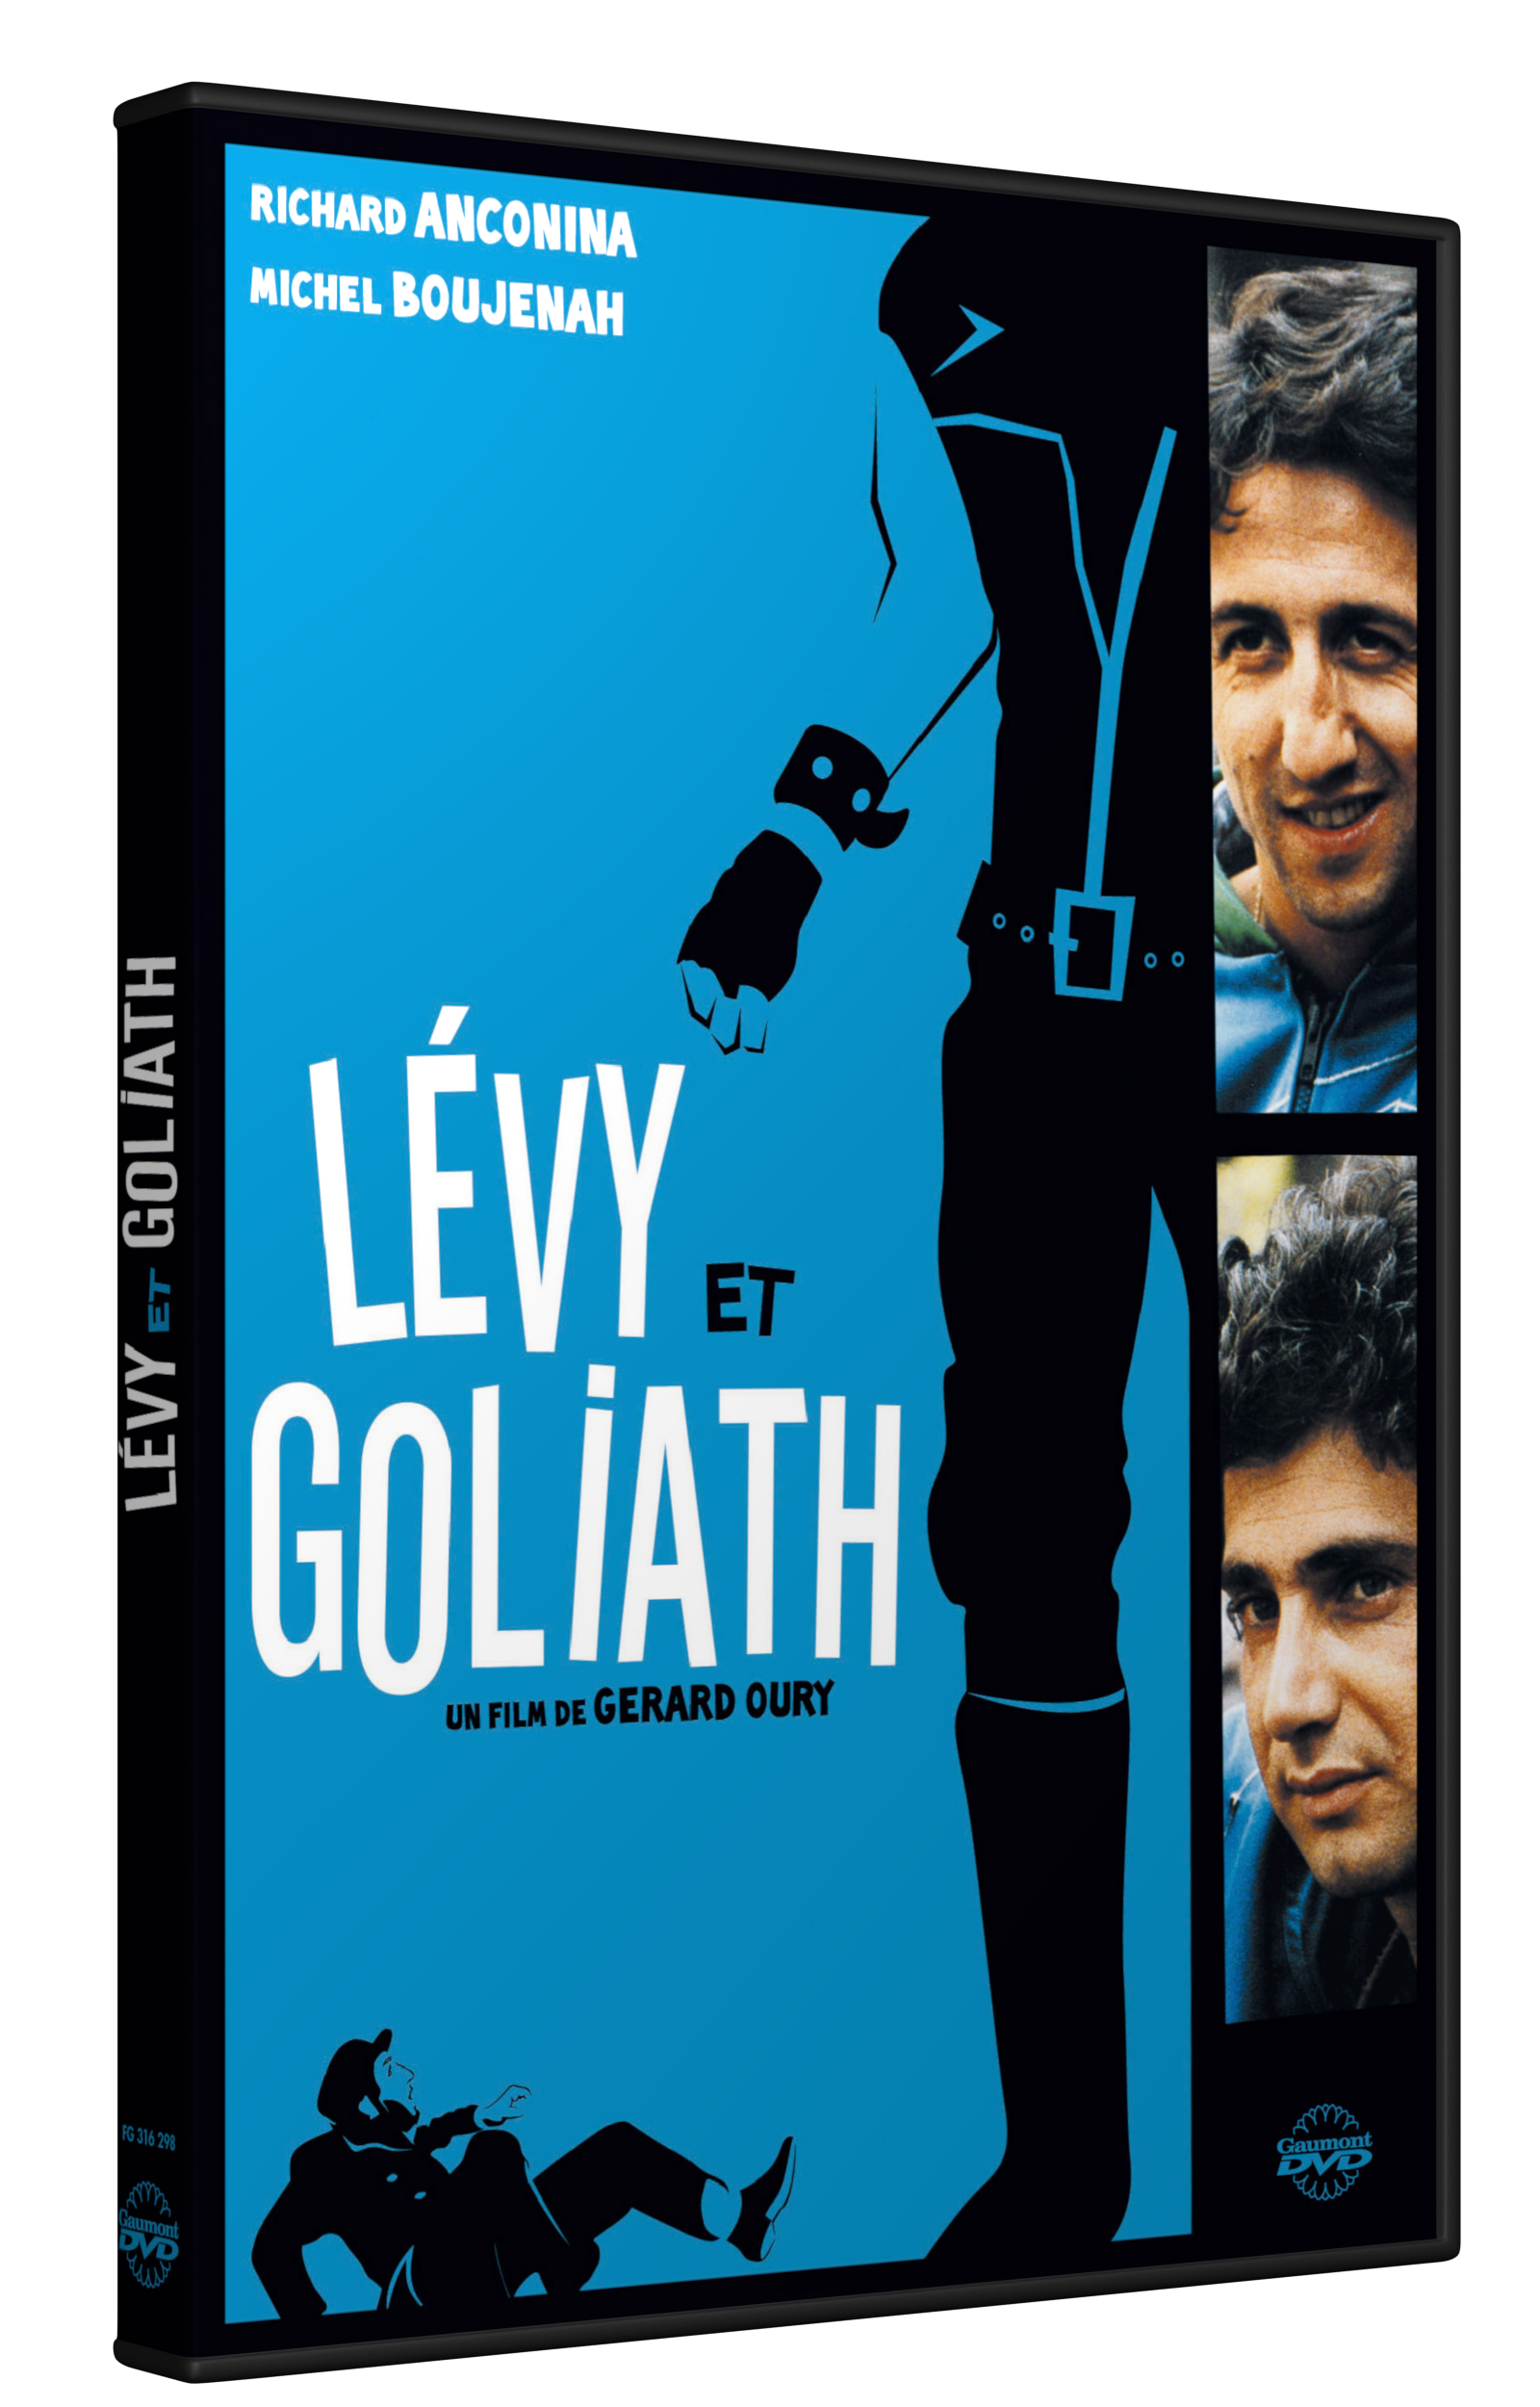 LEVY ET GOLIATH